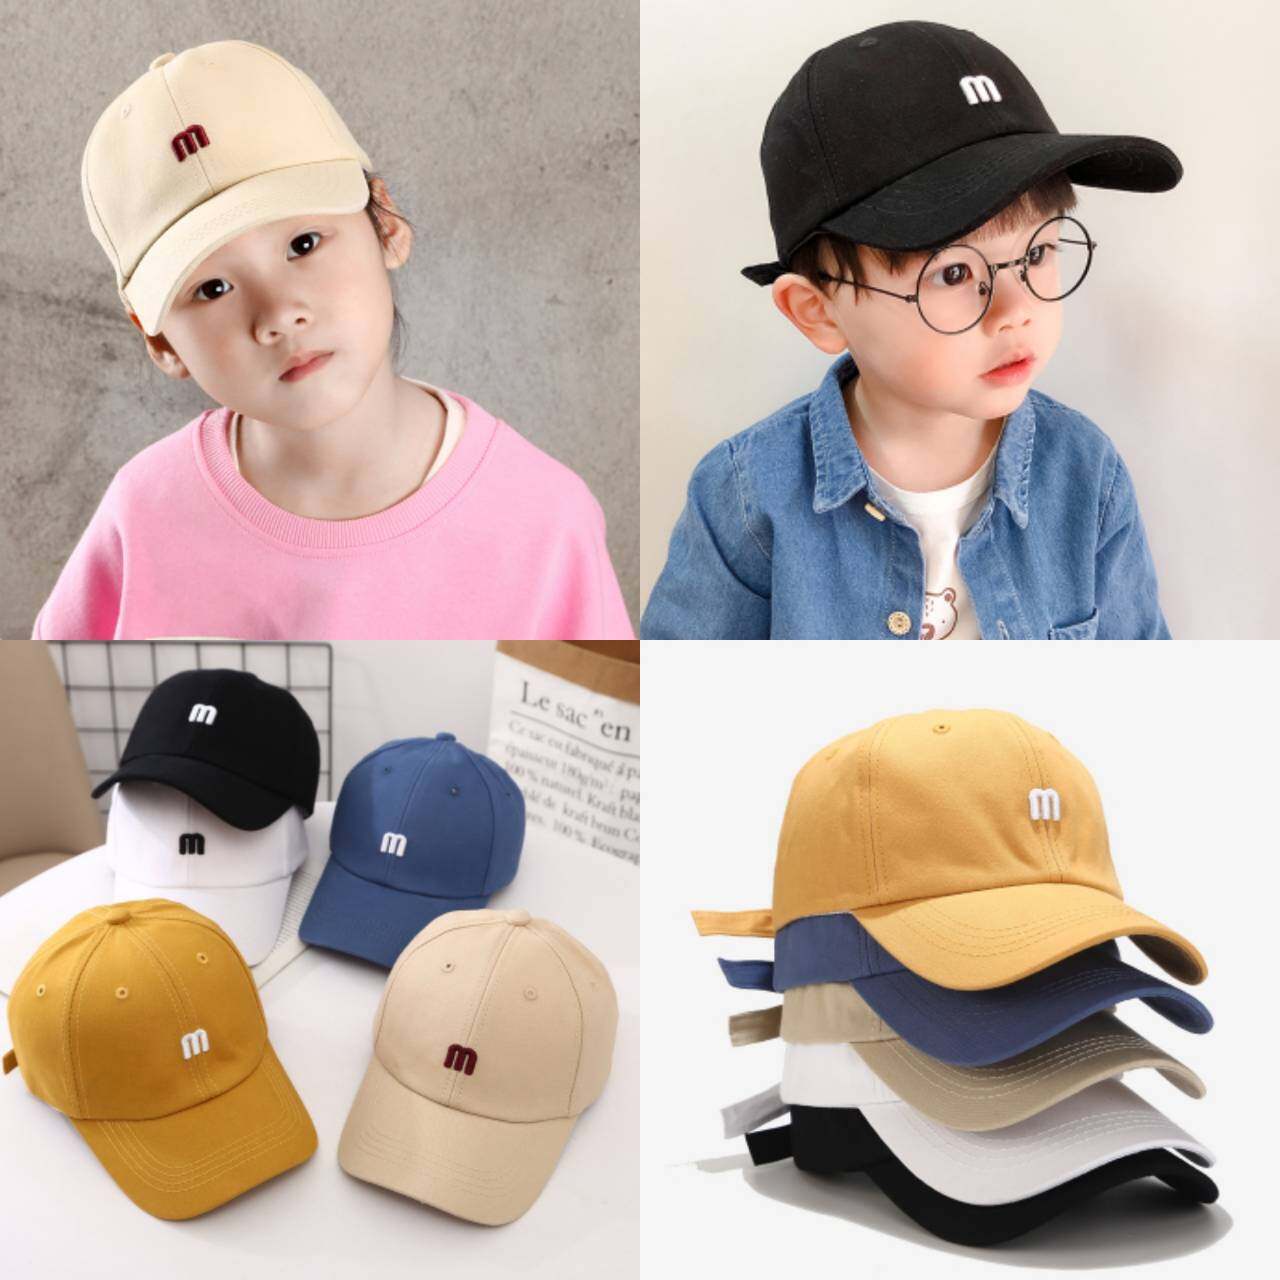 ☆พร้อมส่ง☆หมวก หมวกเด็ก 8เดือน-5ปี รอบหัว:51-53 cm.หมวกเด็กโต หมวกเด็กชาย หมวกเด็กหญิง หมวกเบสบอล หมวกแก๊ปปีกแข็ง หมวกแฟชั่น ปักอักษร 